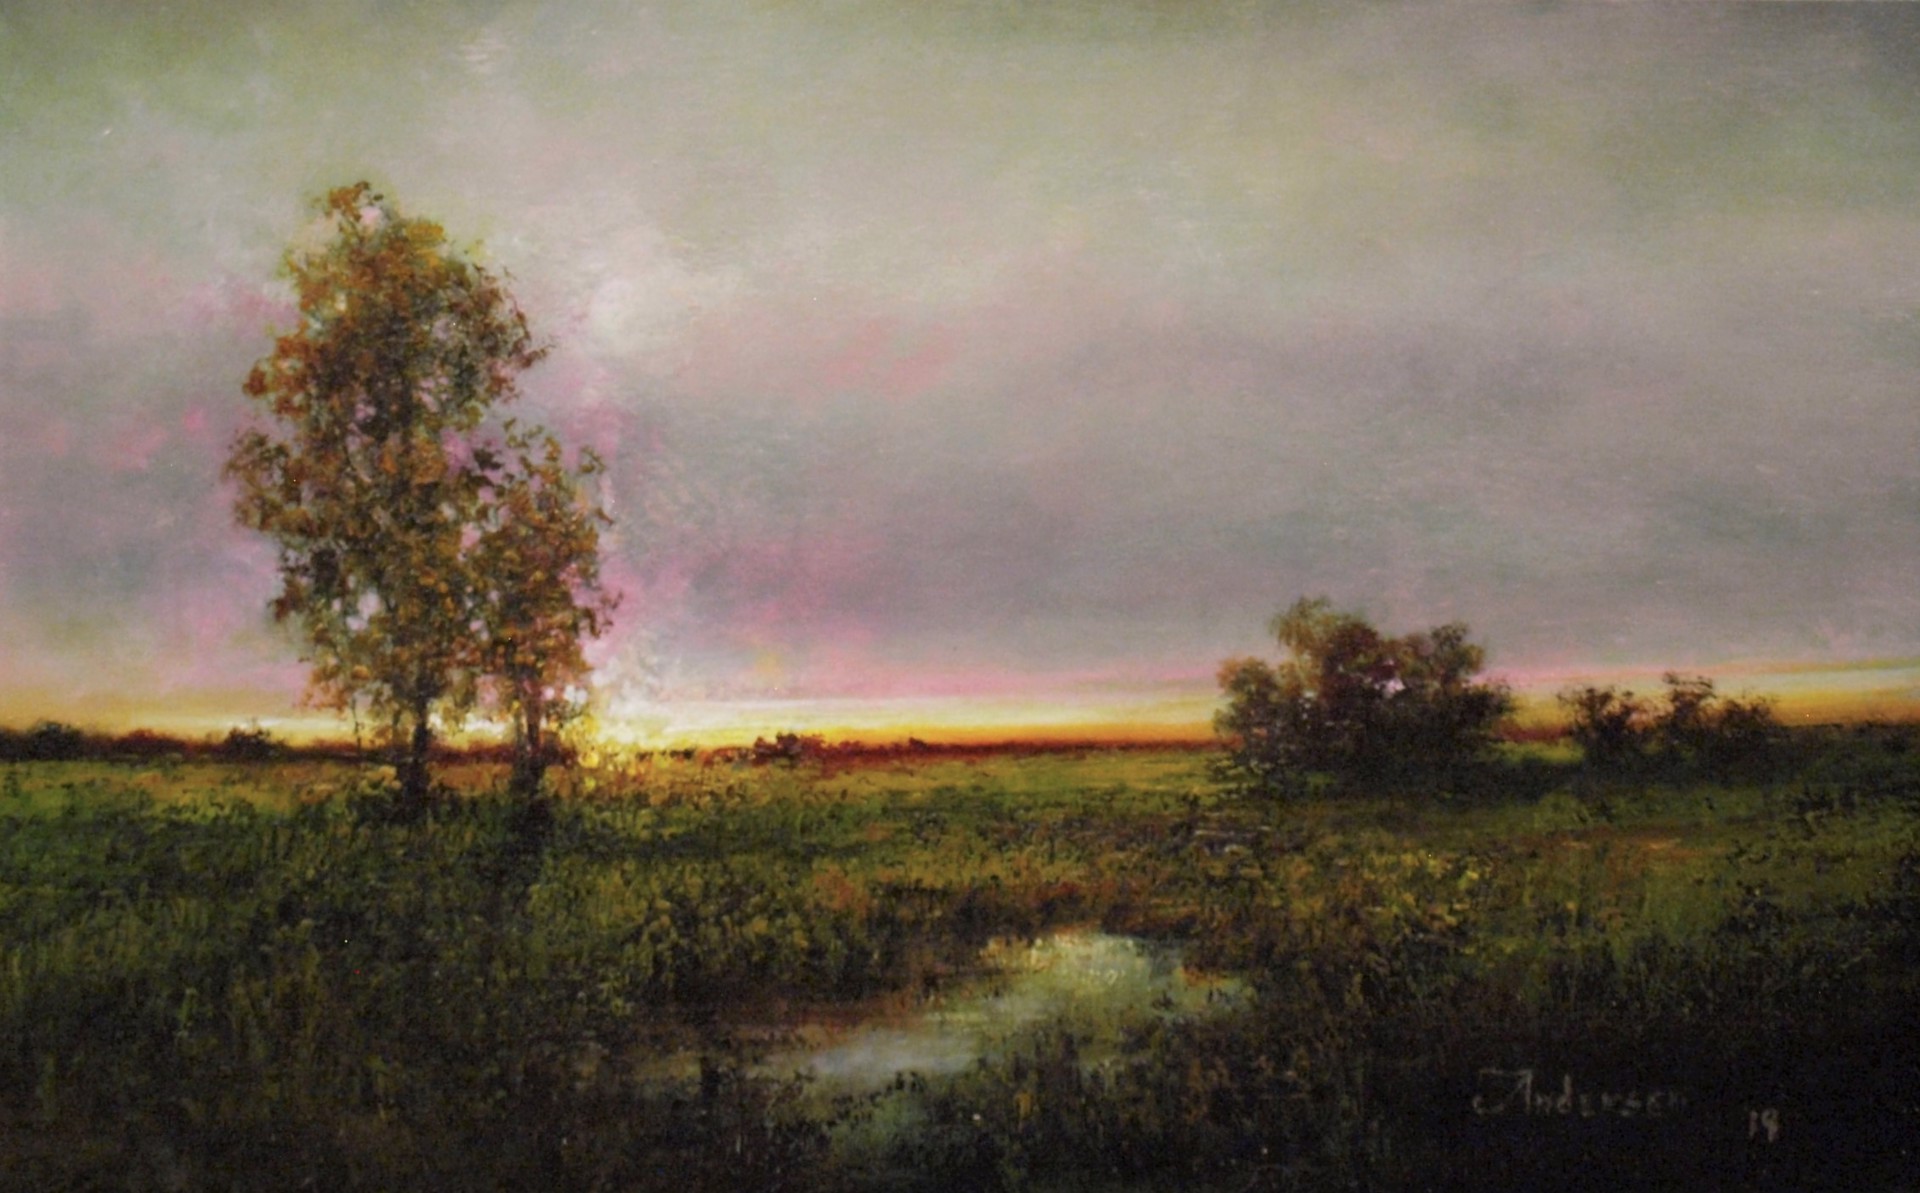 Fields at Sundown by John Andersen